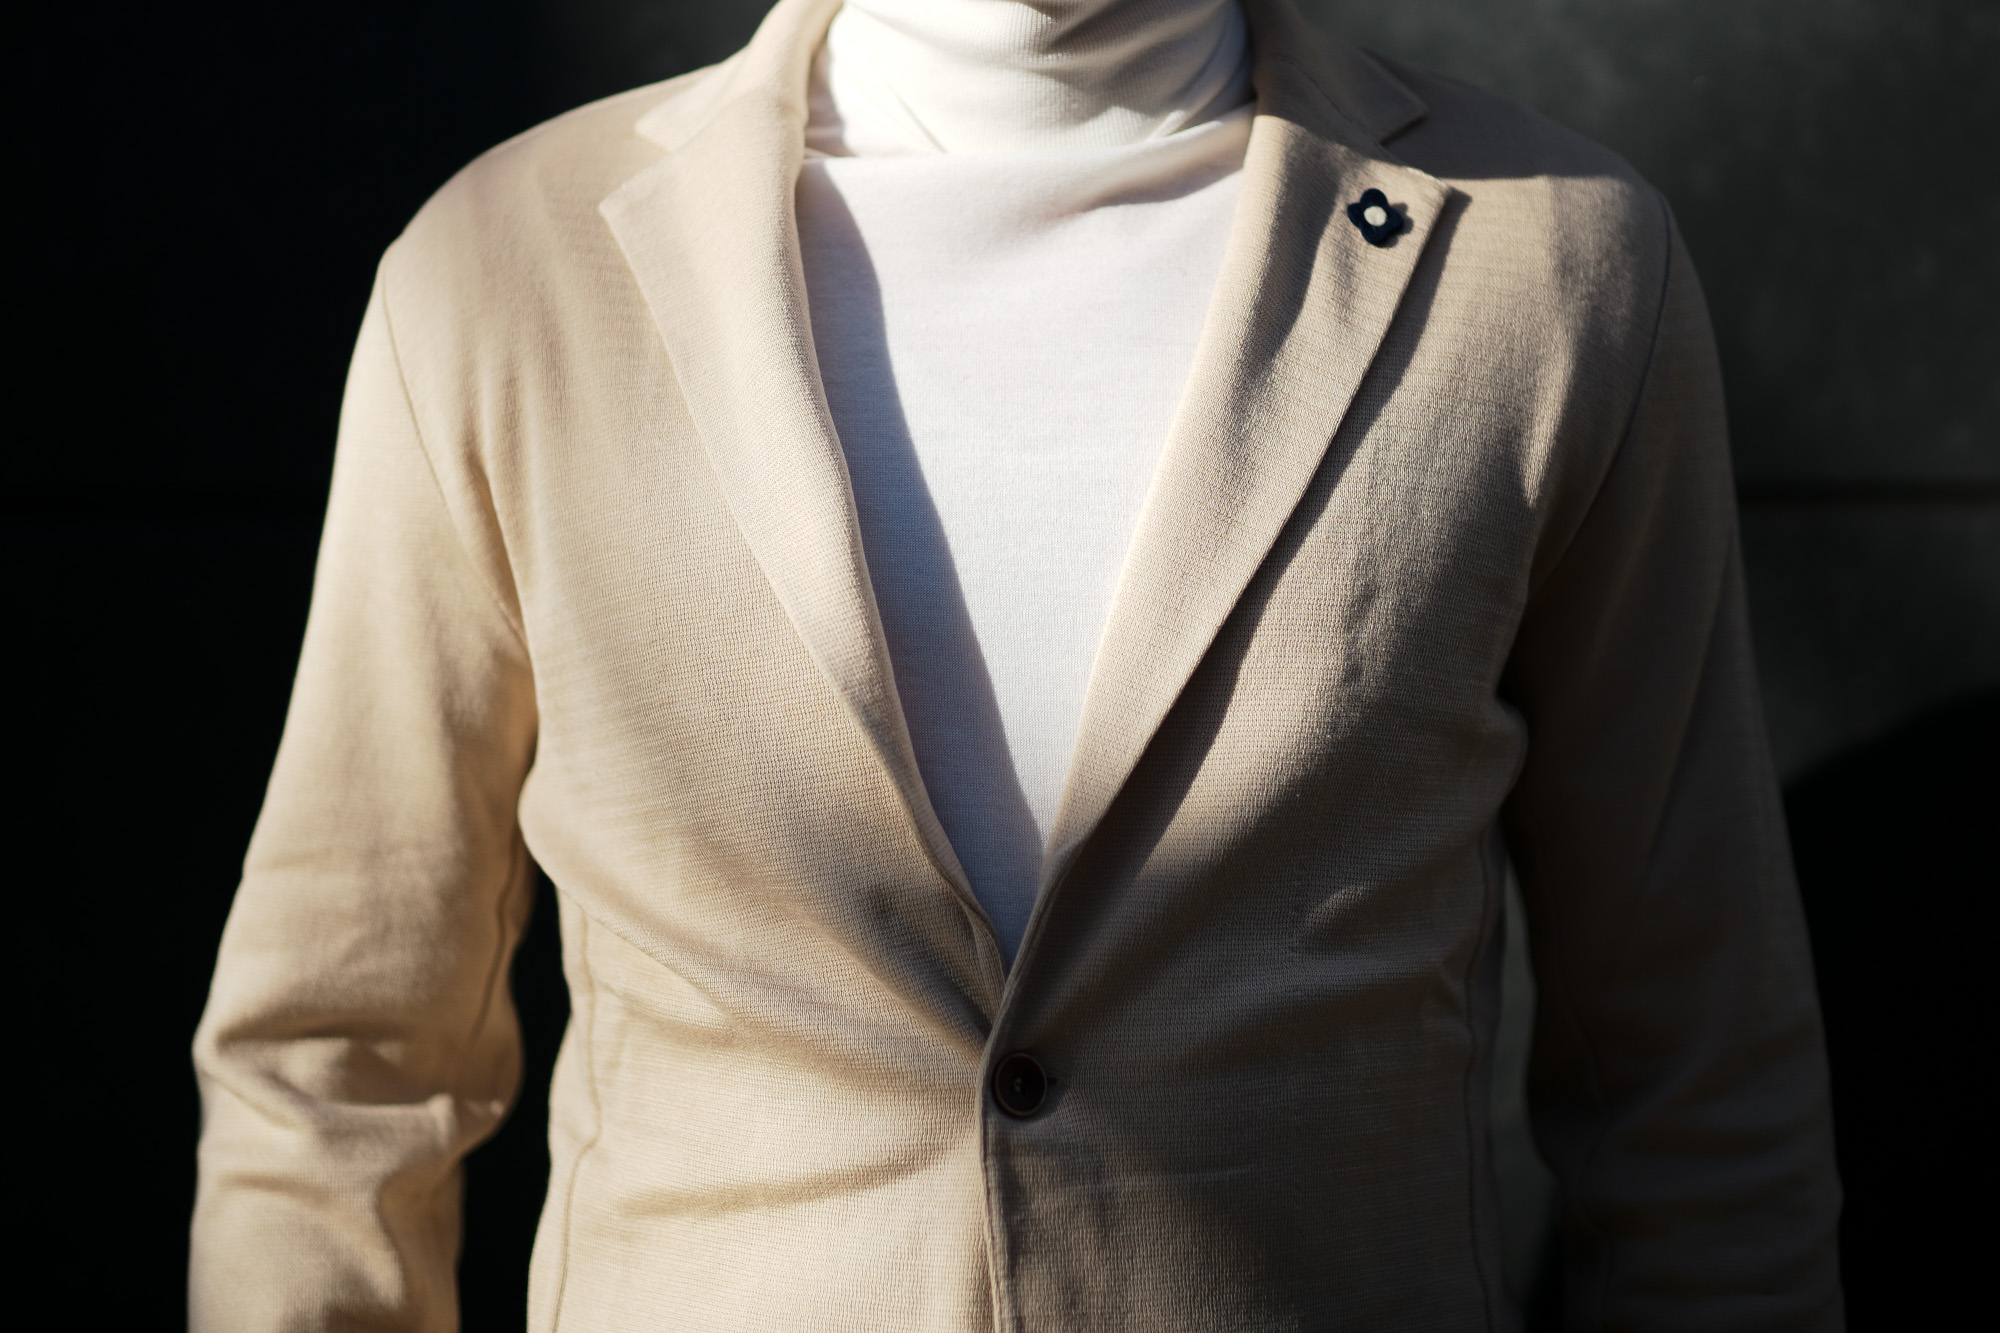 LARDINI (ラルディーニ) Milano Rib Knit Jacket (ミラノリブ ニット ジャケット) コットン ミラノリブ 2B ニットジャケット BEIGE(ベージュ・200) Made in italy (イタリア製) 2019 春夏新作 愛知 名古屋 alto e diritto アルトエデリット スーツ